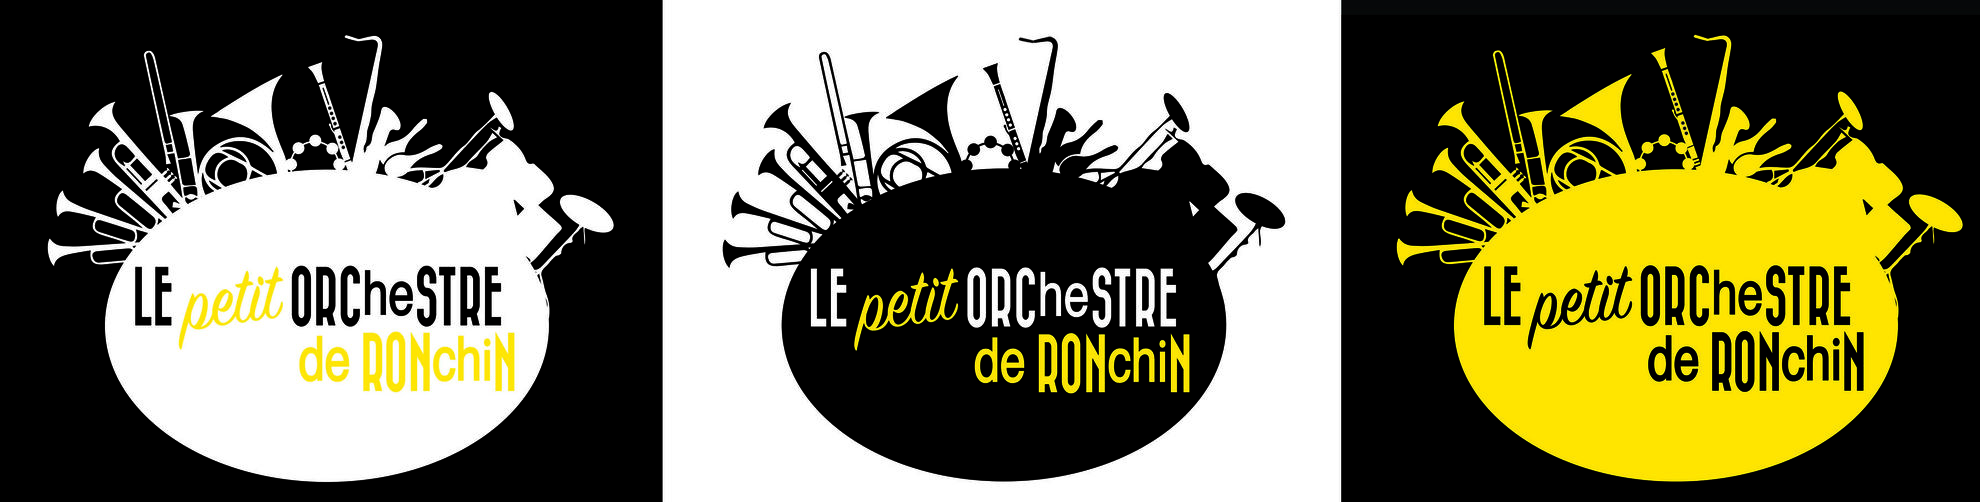 Logo "Petit orchestre de Ronchin"